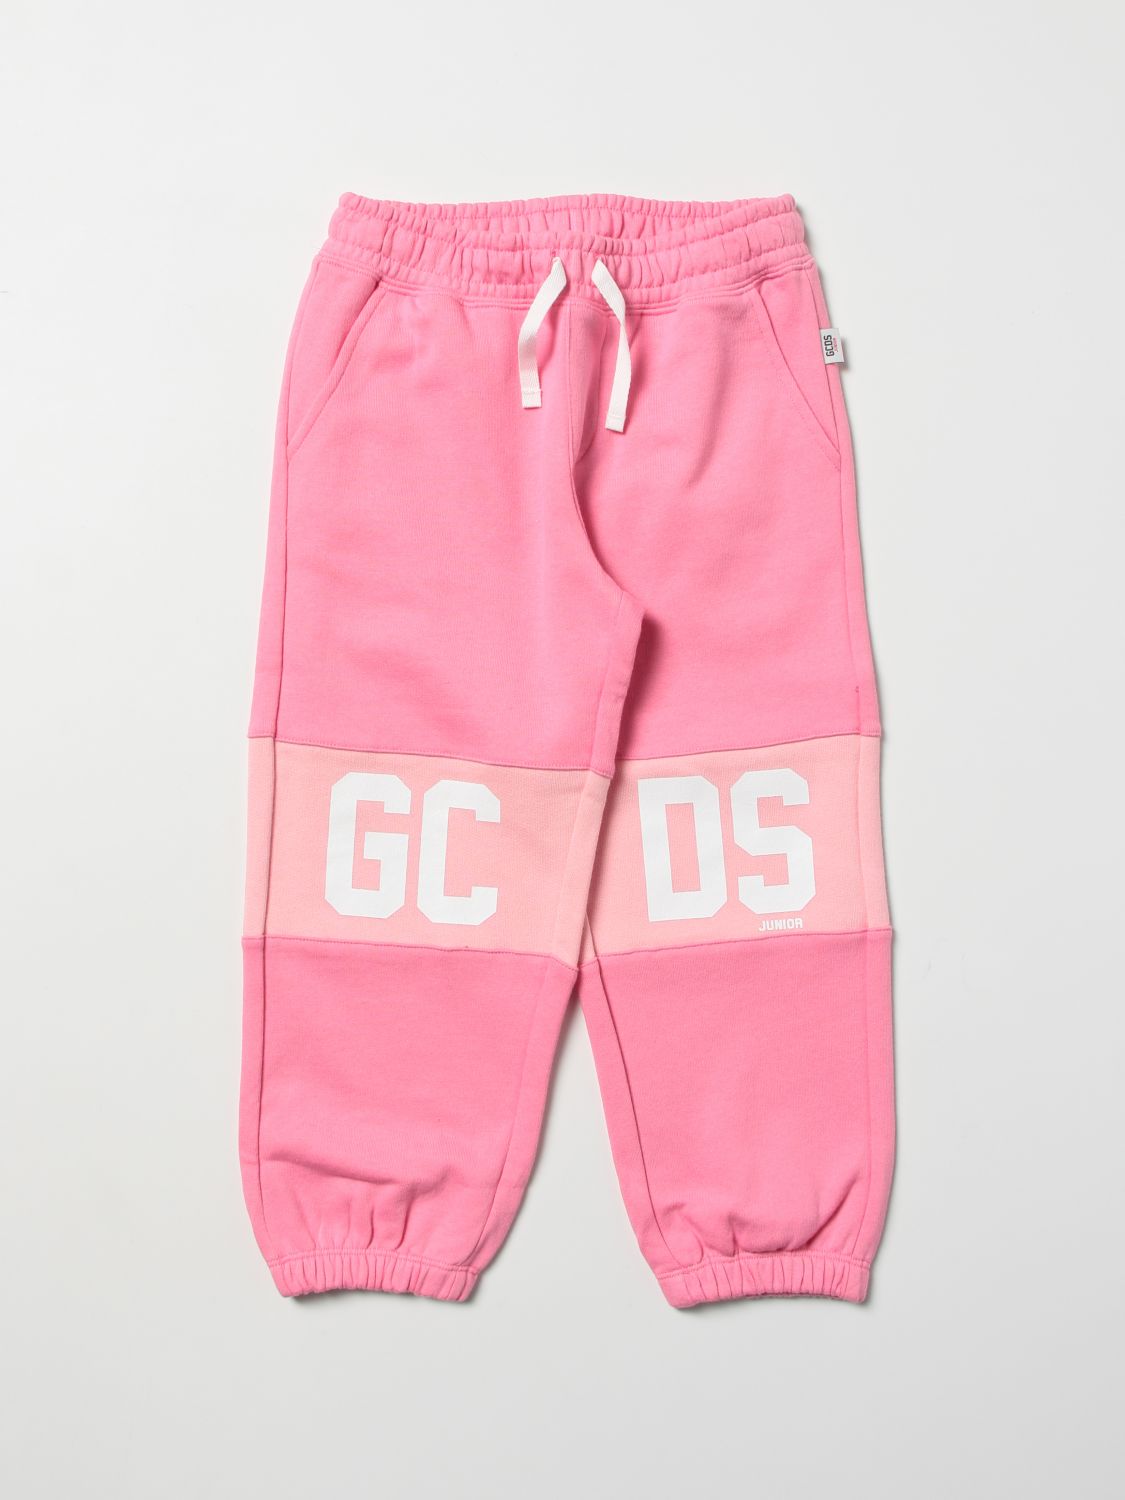 Pants Gcds: Pants kids Gcds pink 1